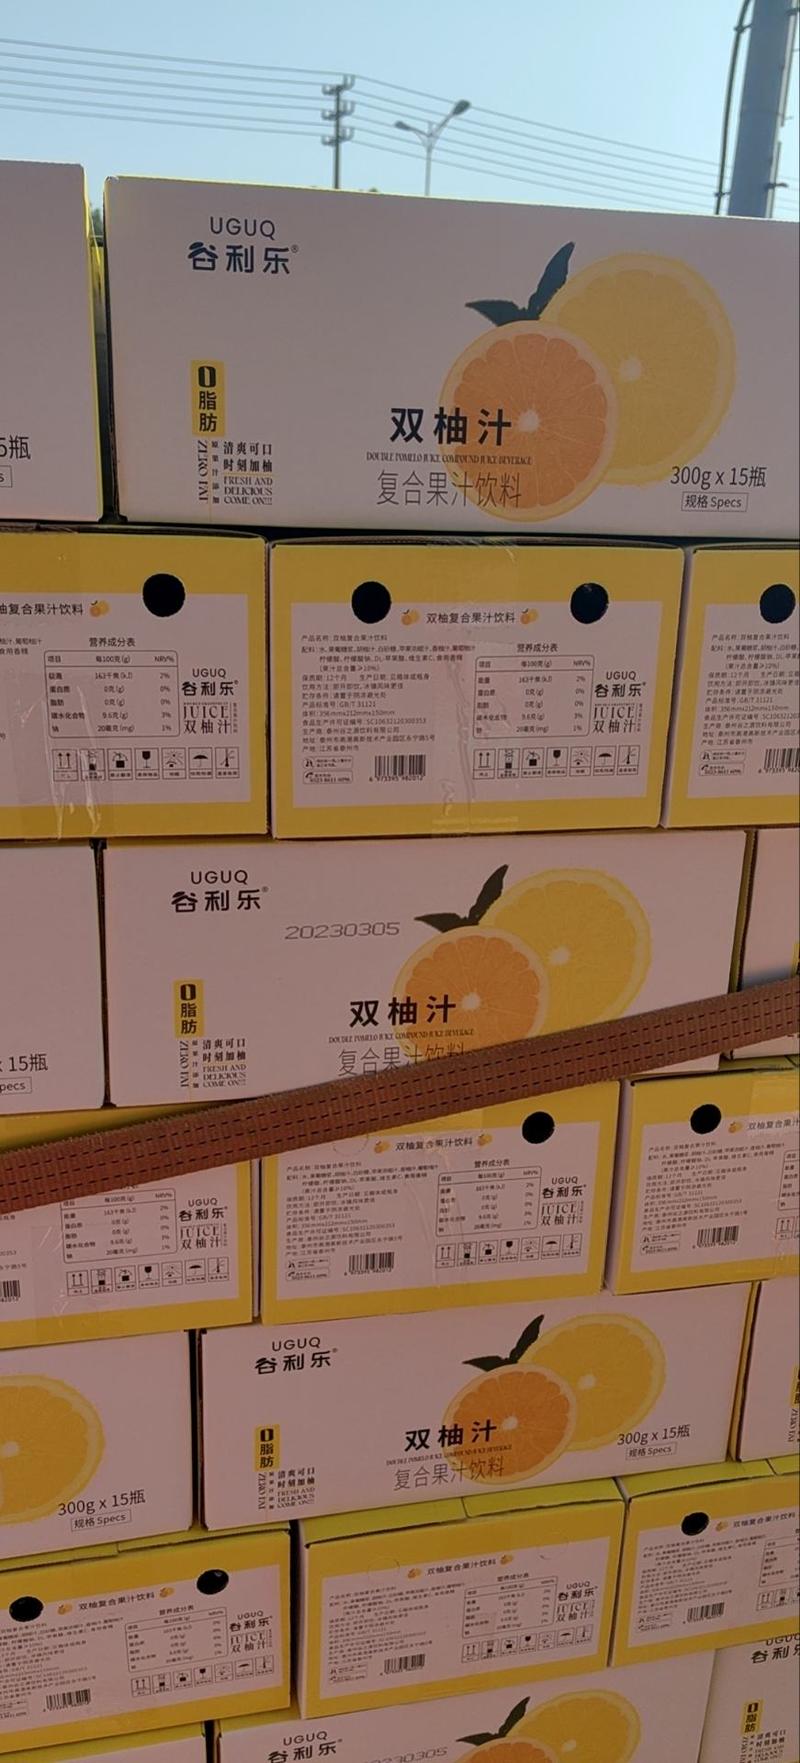 双柚汁谷利乐品牌产品15瓶一箱玻璃瓶装全国招经销商